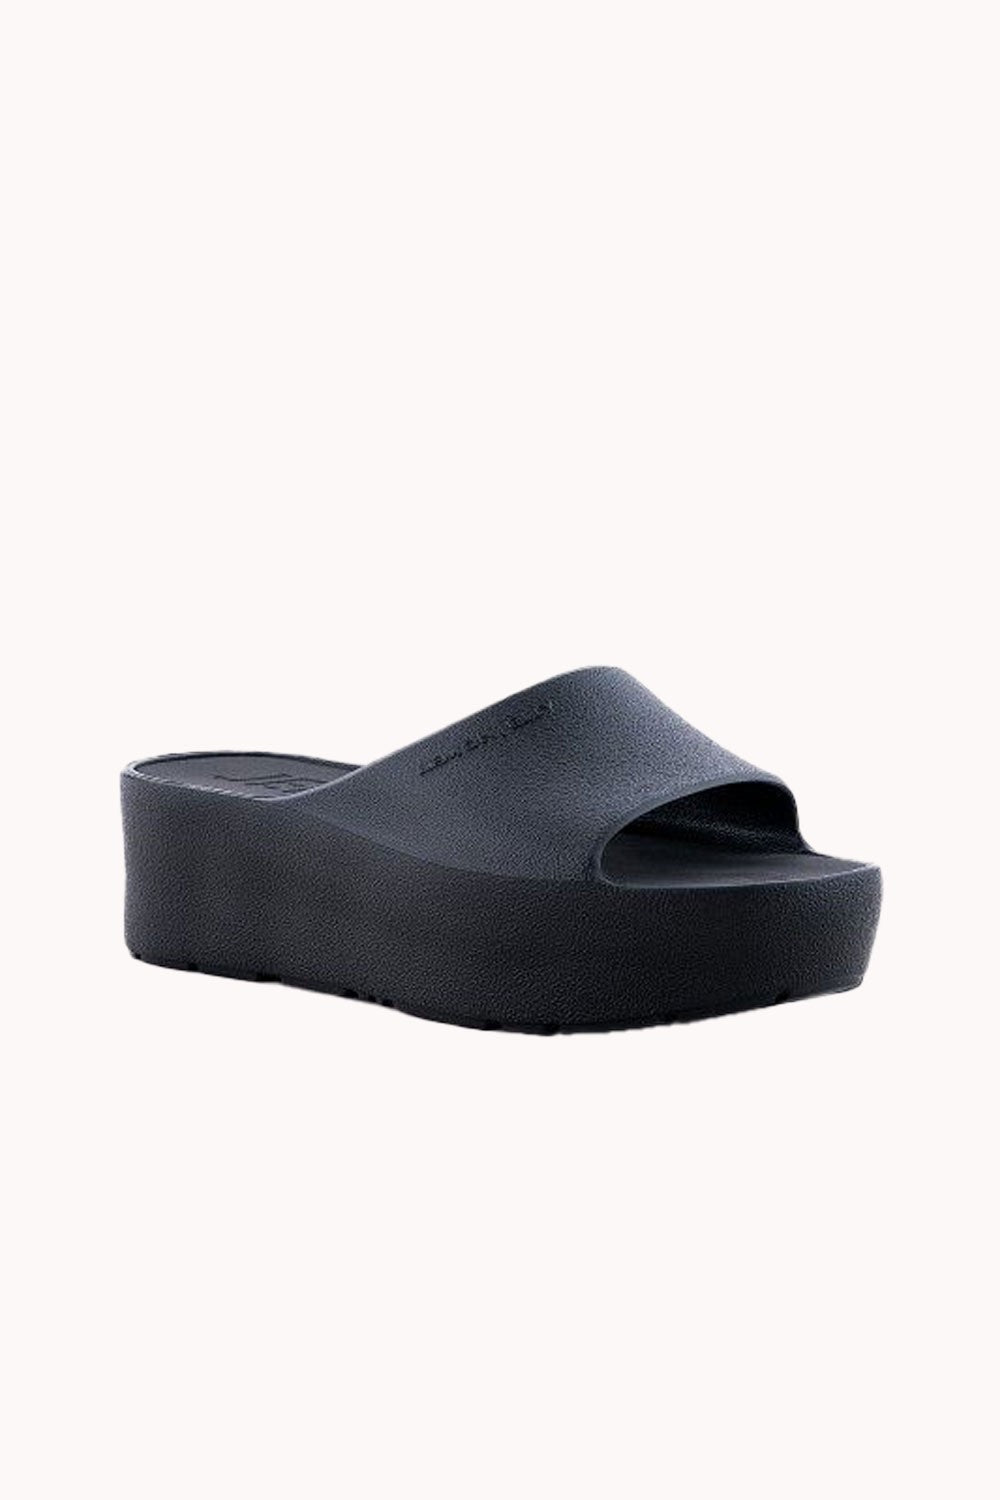 "Sunny" 5cm Black Wedge Slides